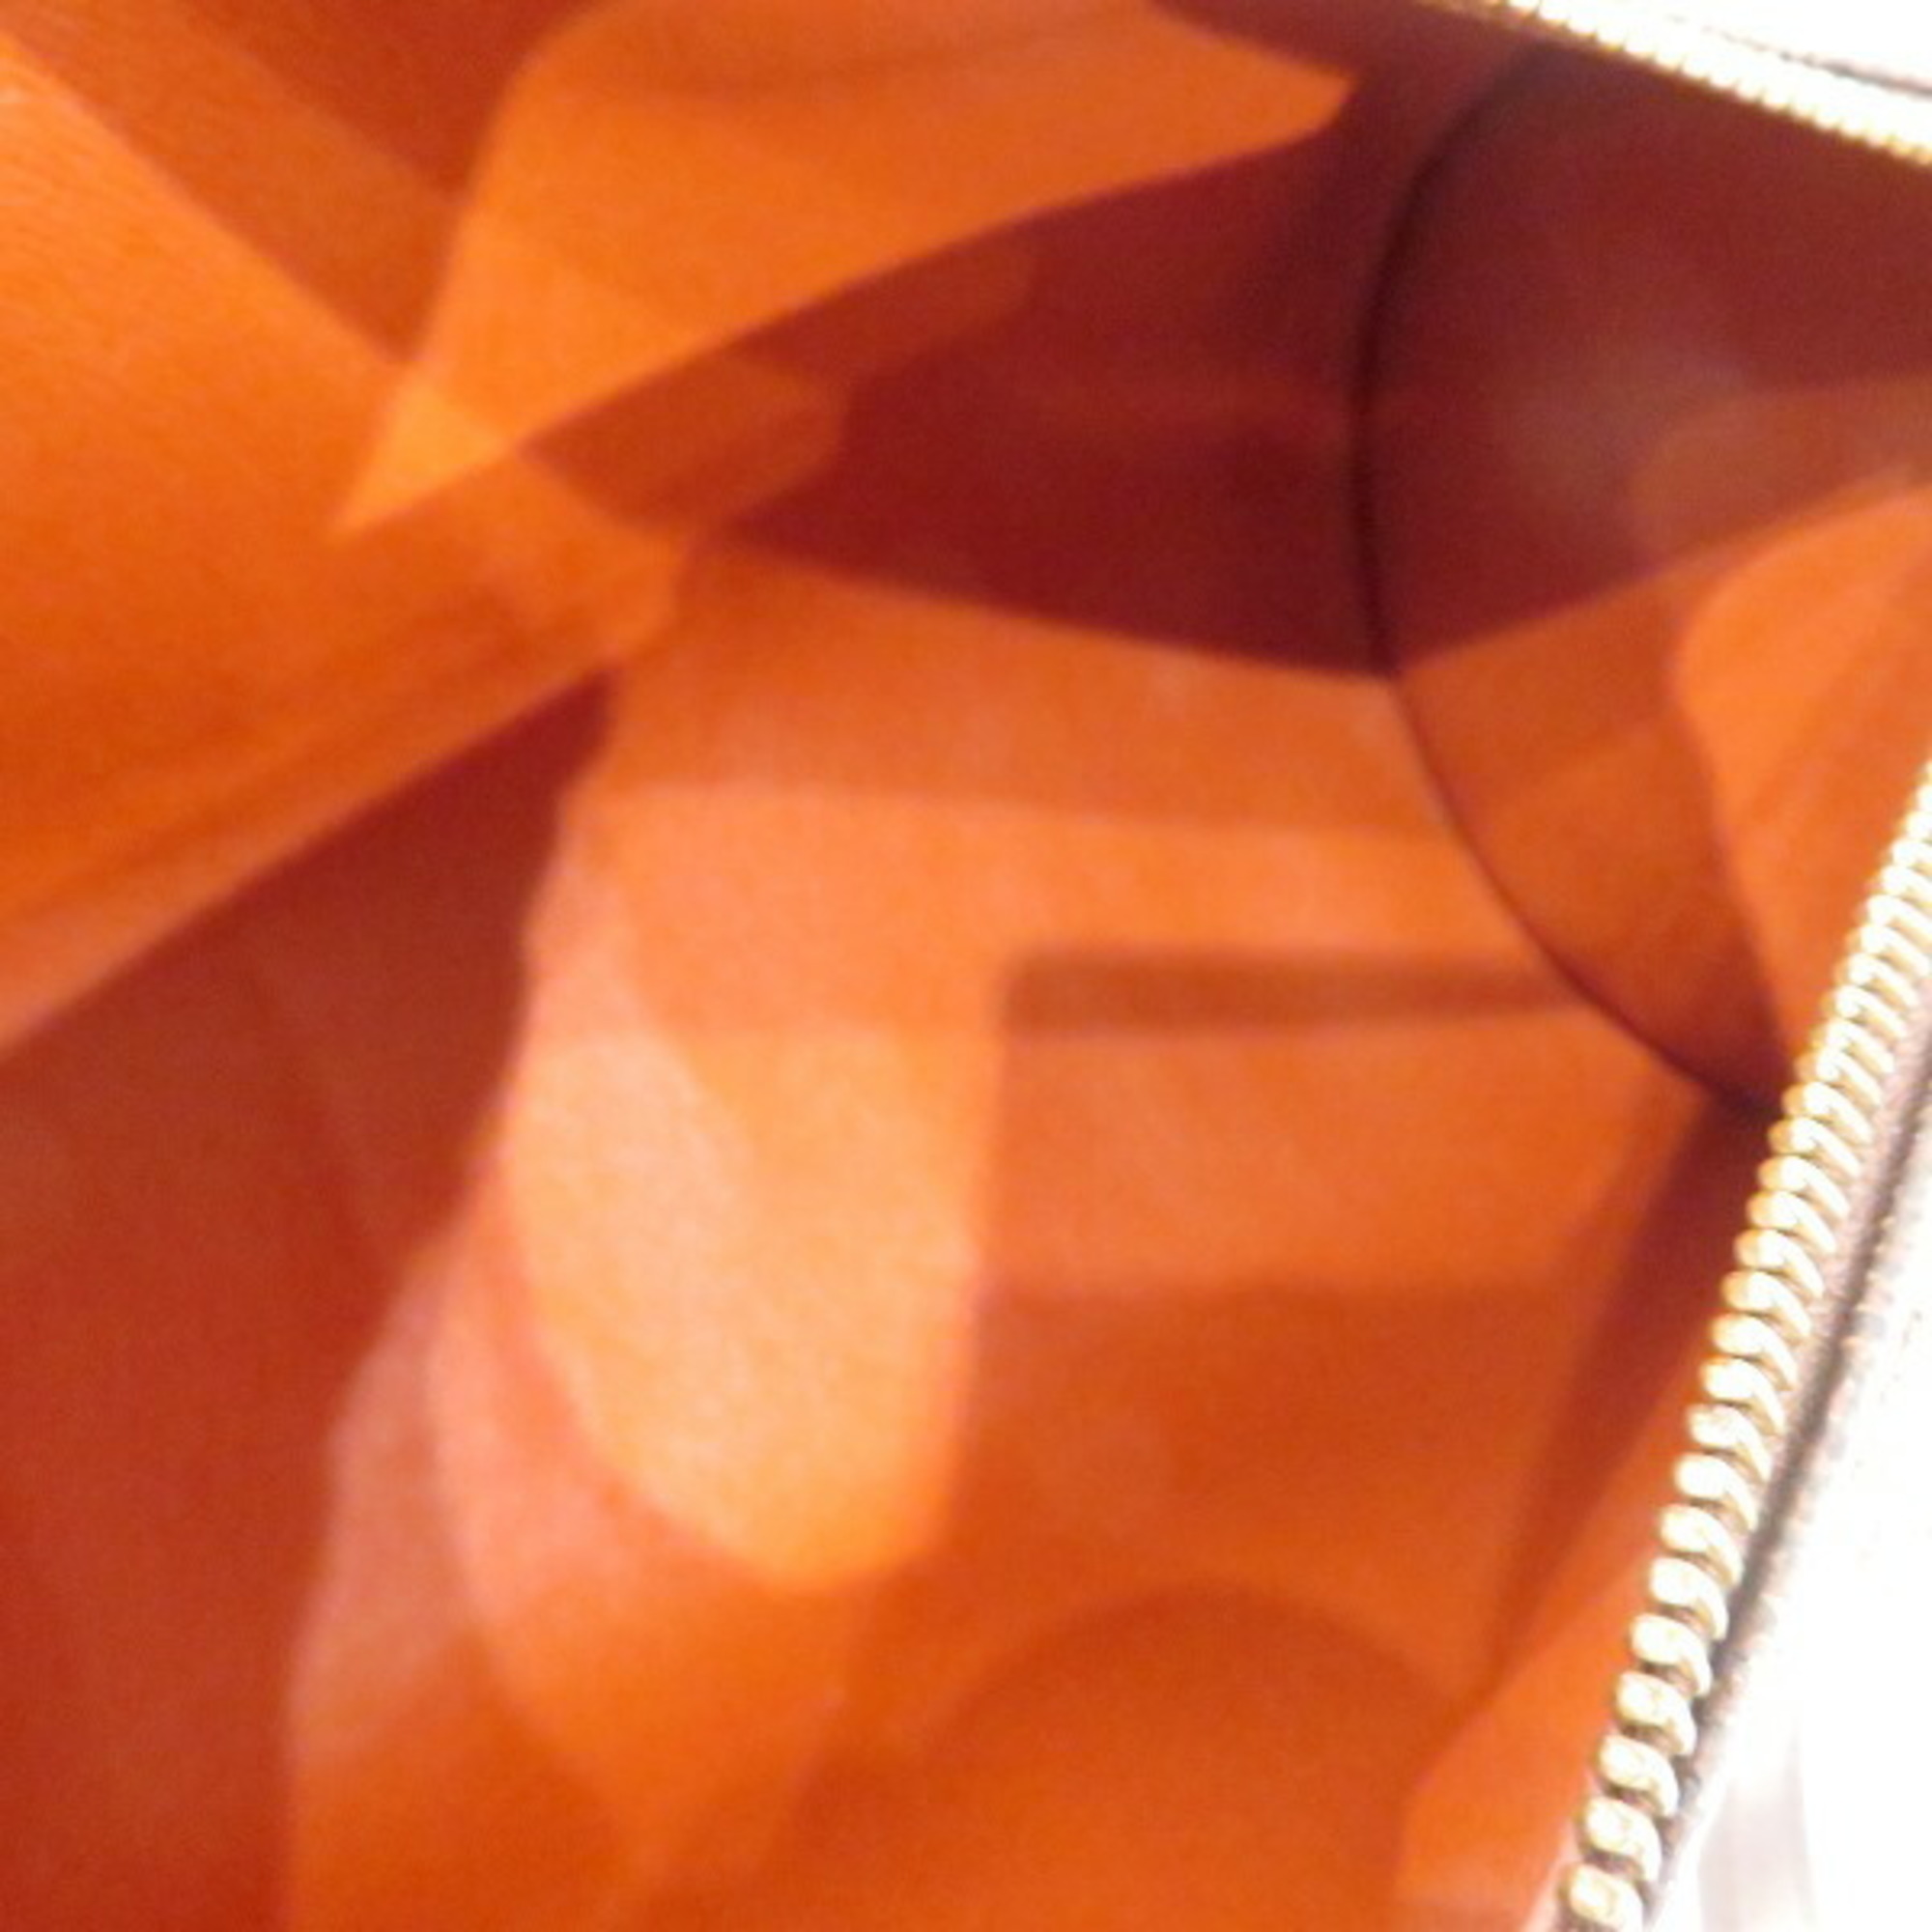 Louis Vuitton Damier Papillon PM N51304 Bags, Handbags, Shoulder Women's